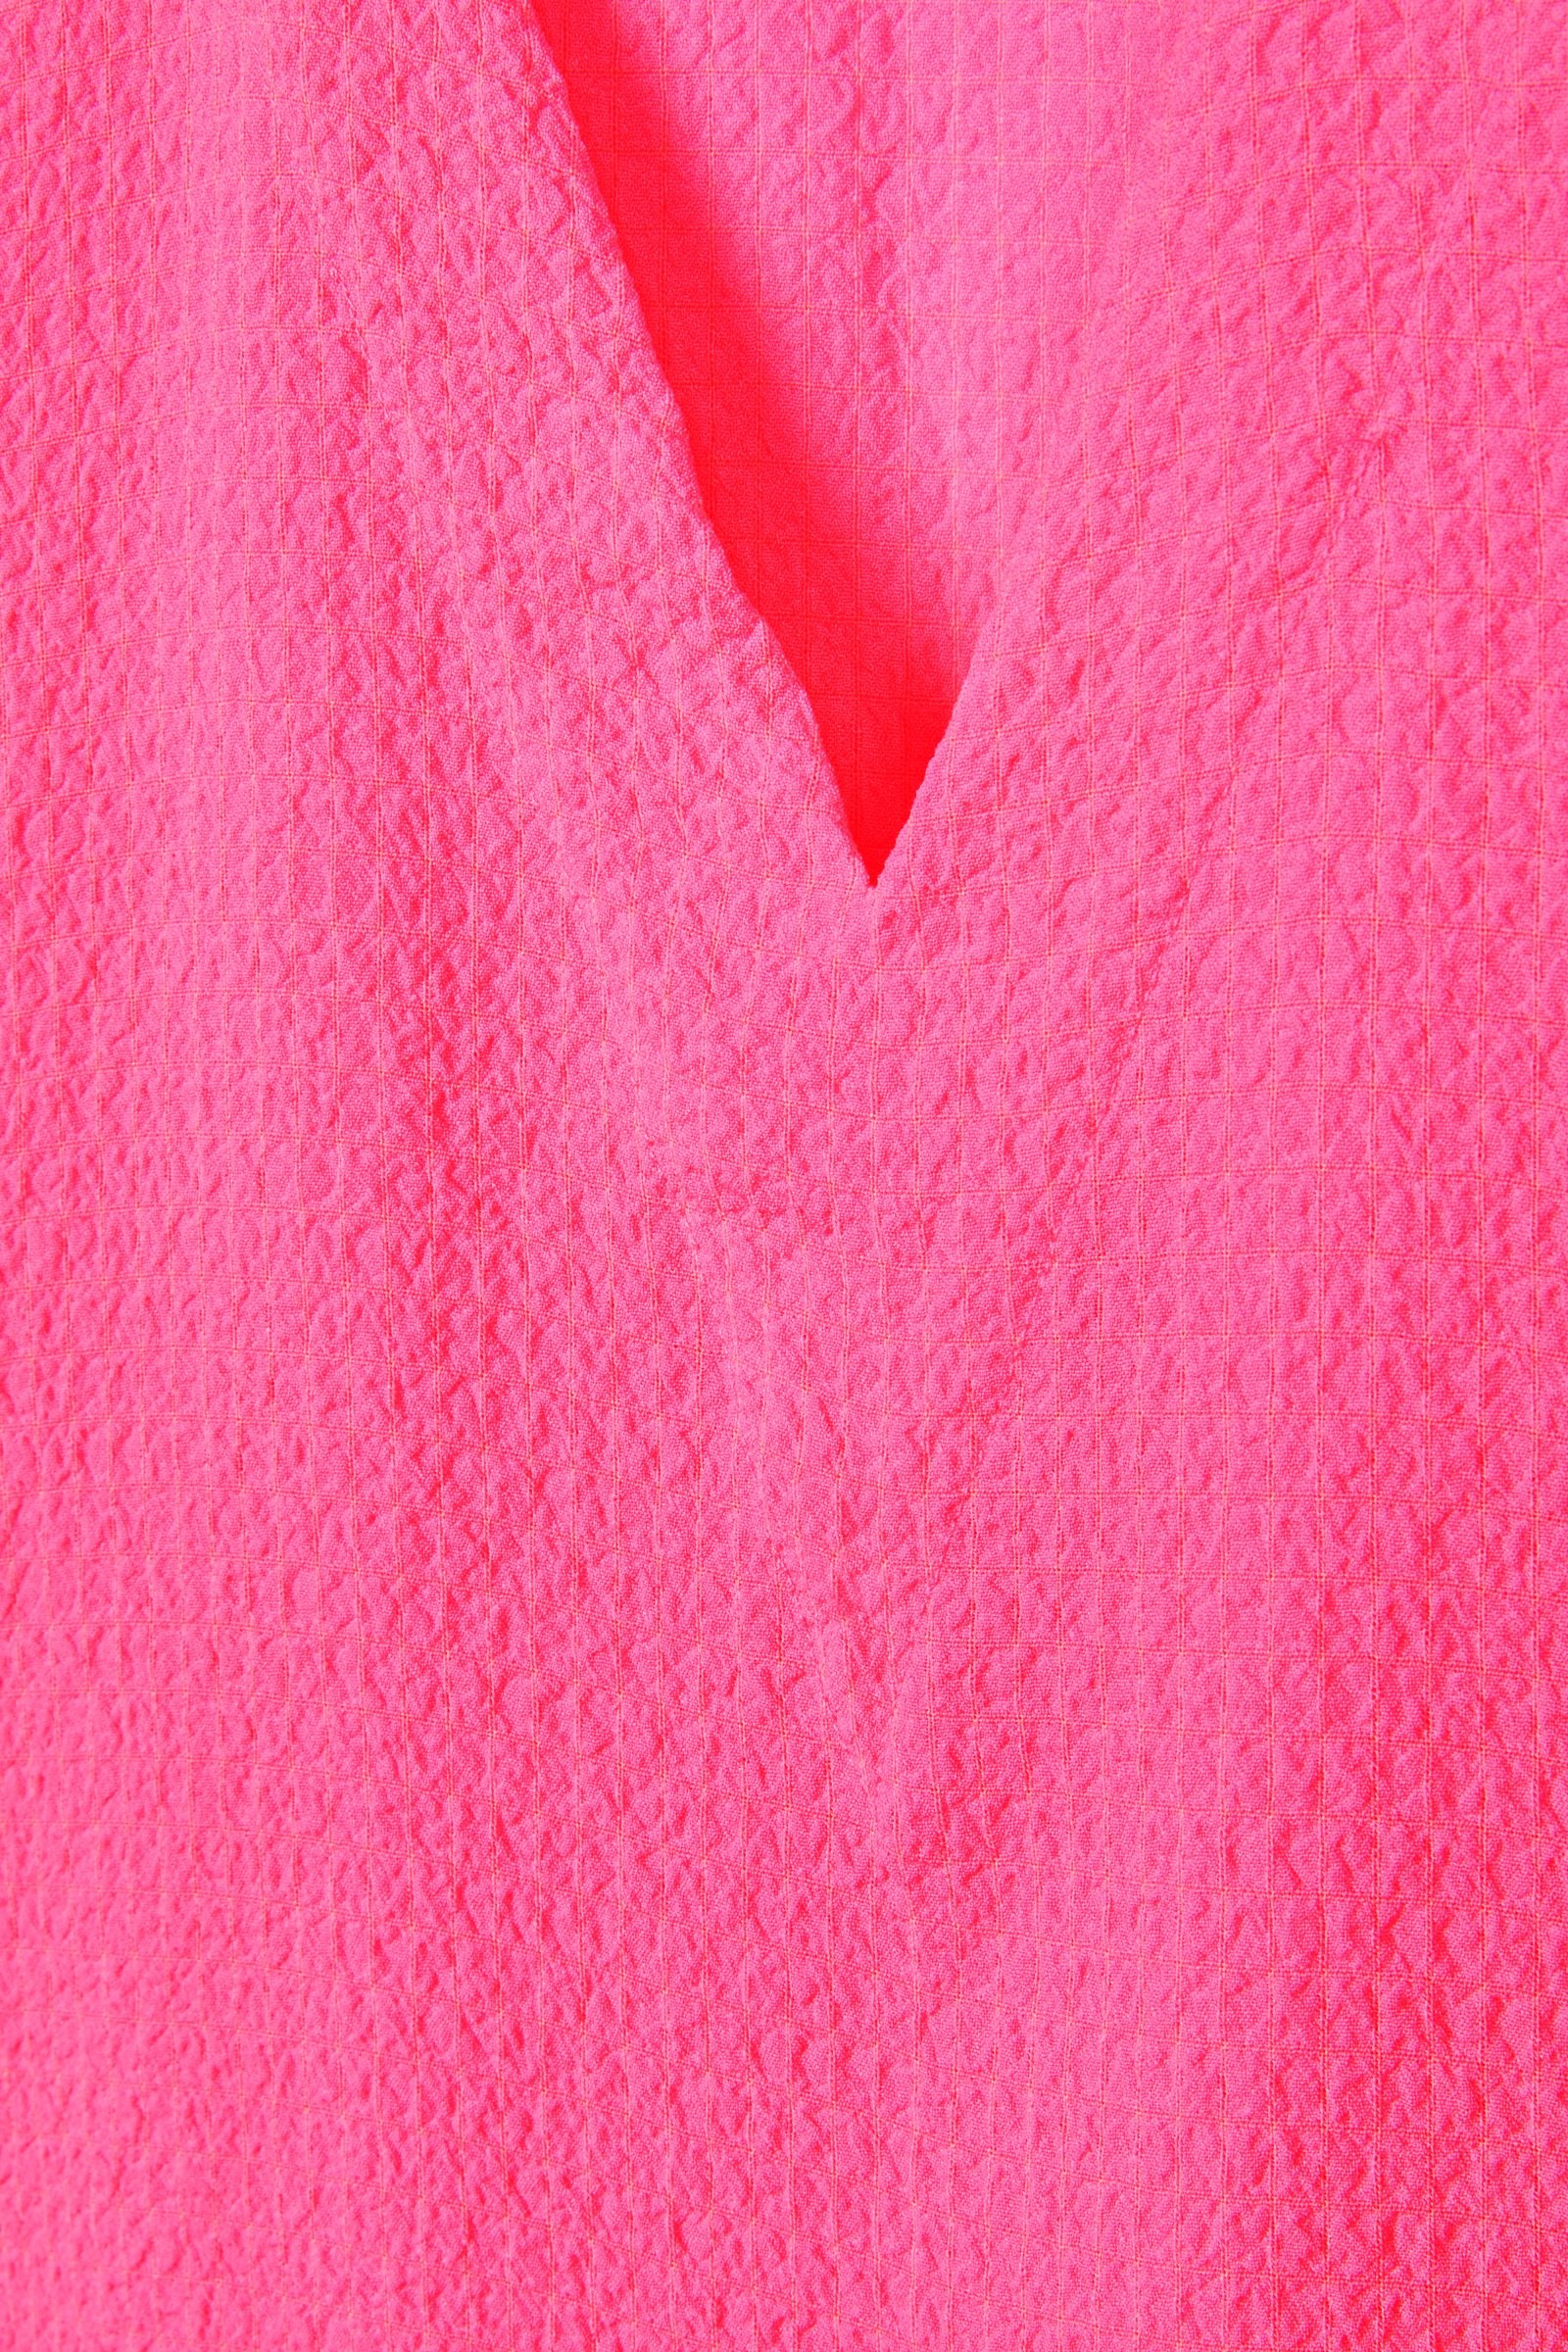 CKS Dames - SABA - blouse long sleeves - bright pink